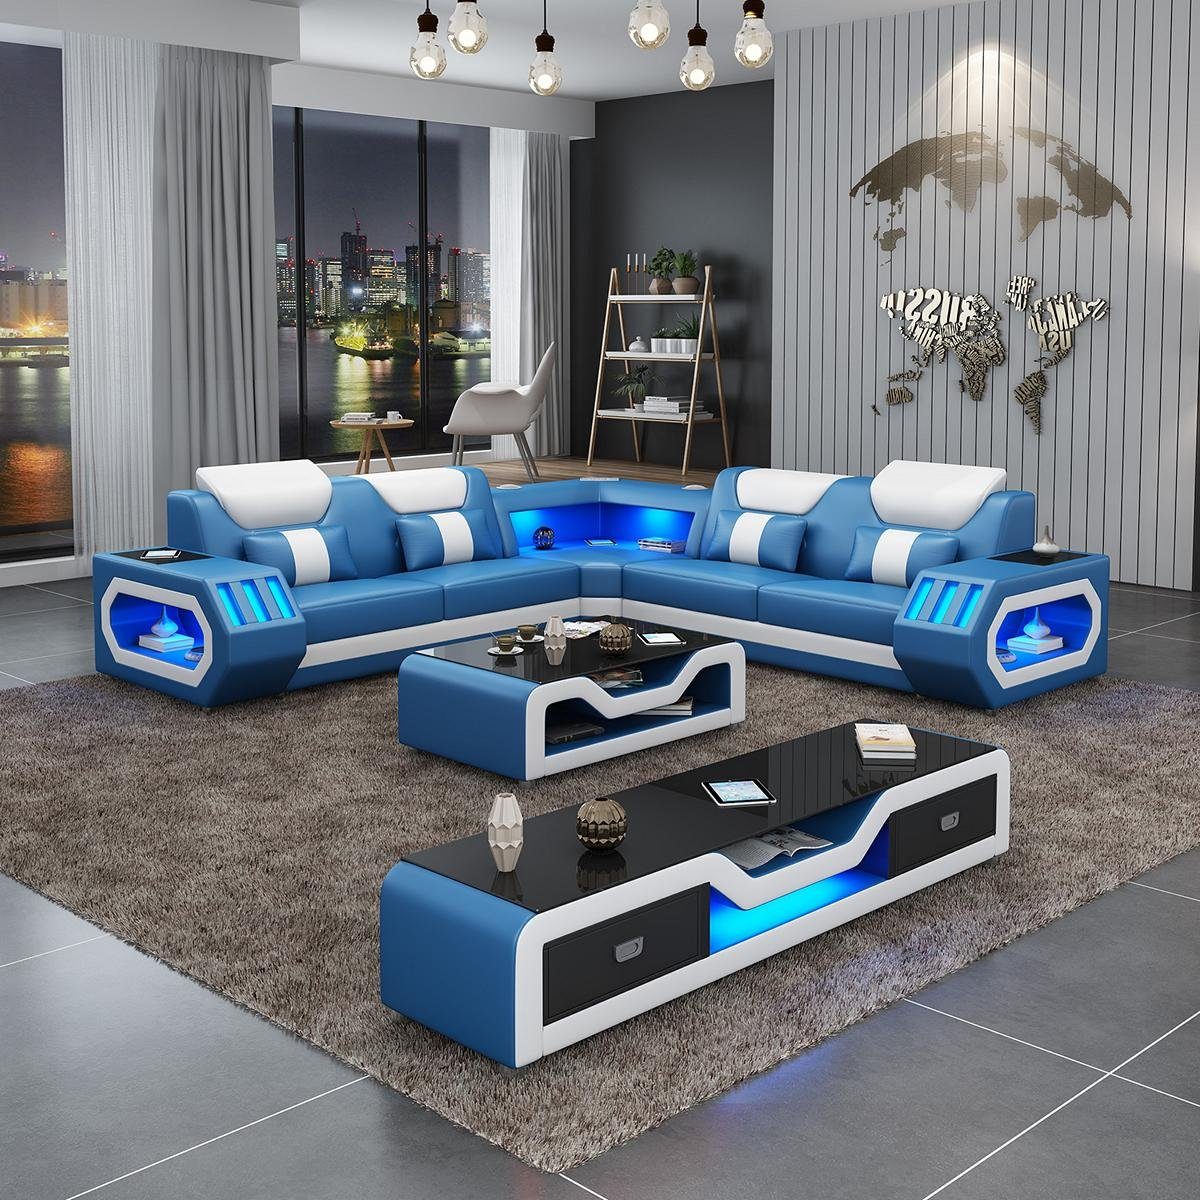 JVmoebel Wohnzimmer-Set, Ecksofa L Form Couchtisch Sofa Couch Design Polster Leder Modern Blau Blau/Weiß